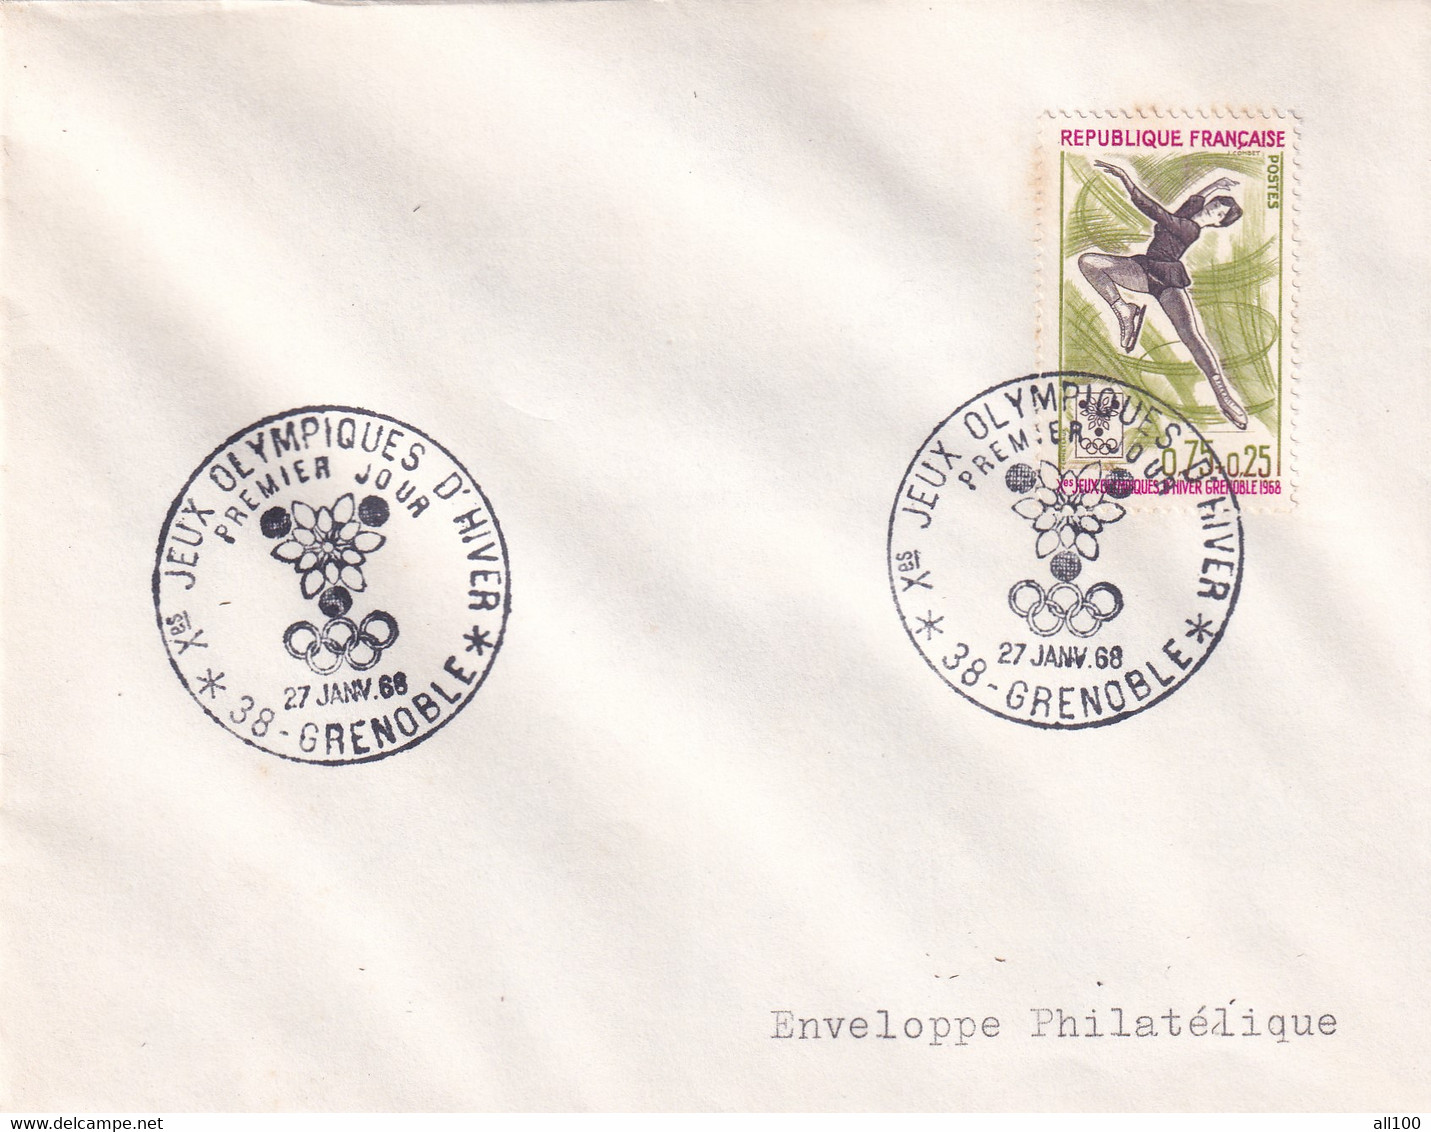 A21887 - Jeux Olympiques D'Hiver Grenoble Cover Envelope Unused 1968 Stamp Republique Francaise Enveloppe Philatelique - Inverno1968: Grenoble